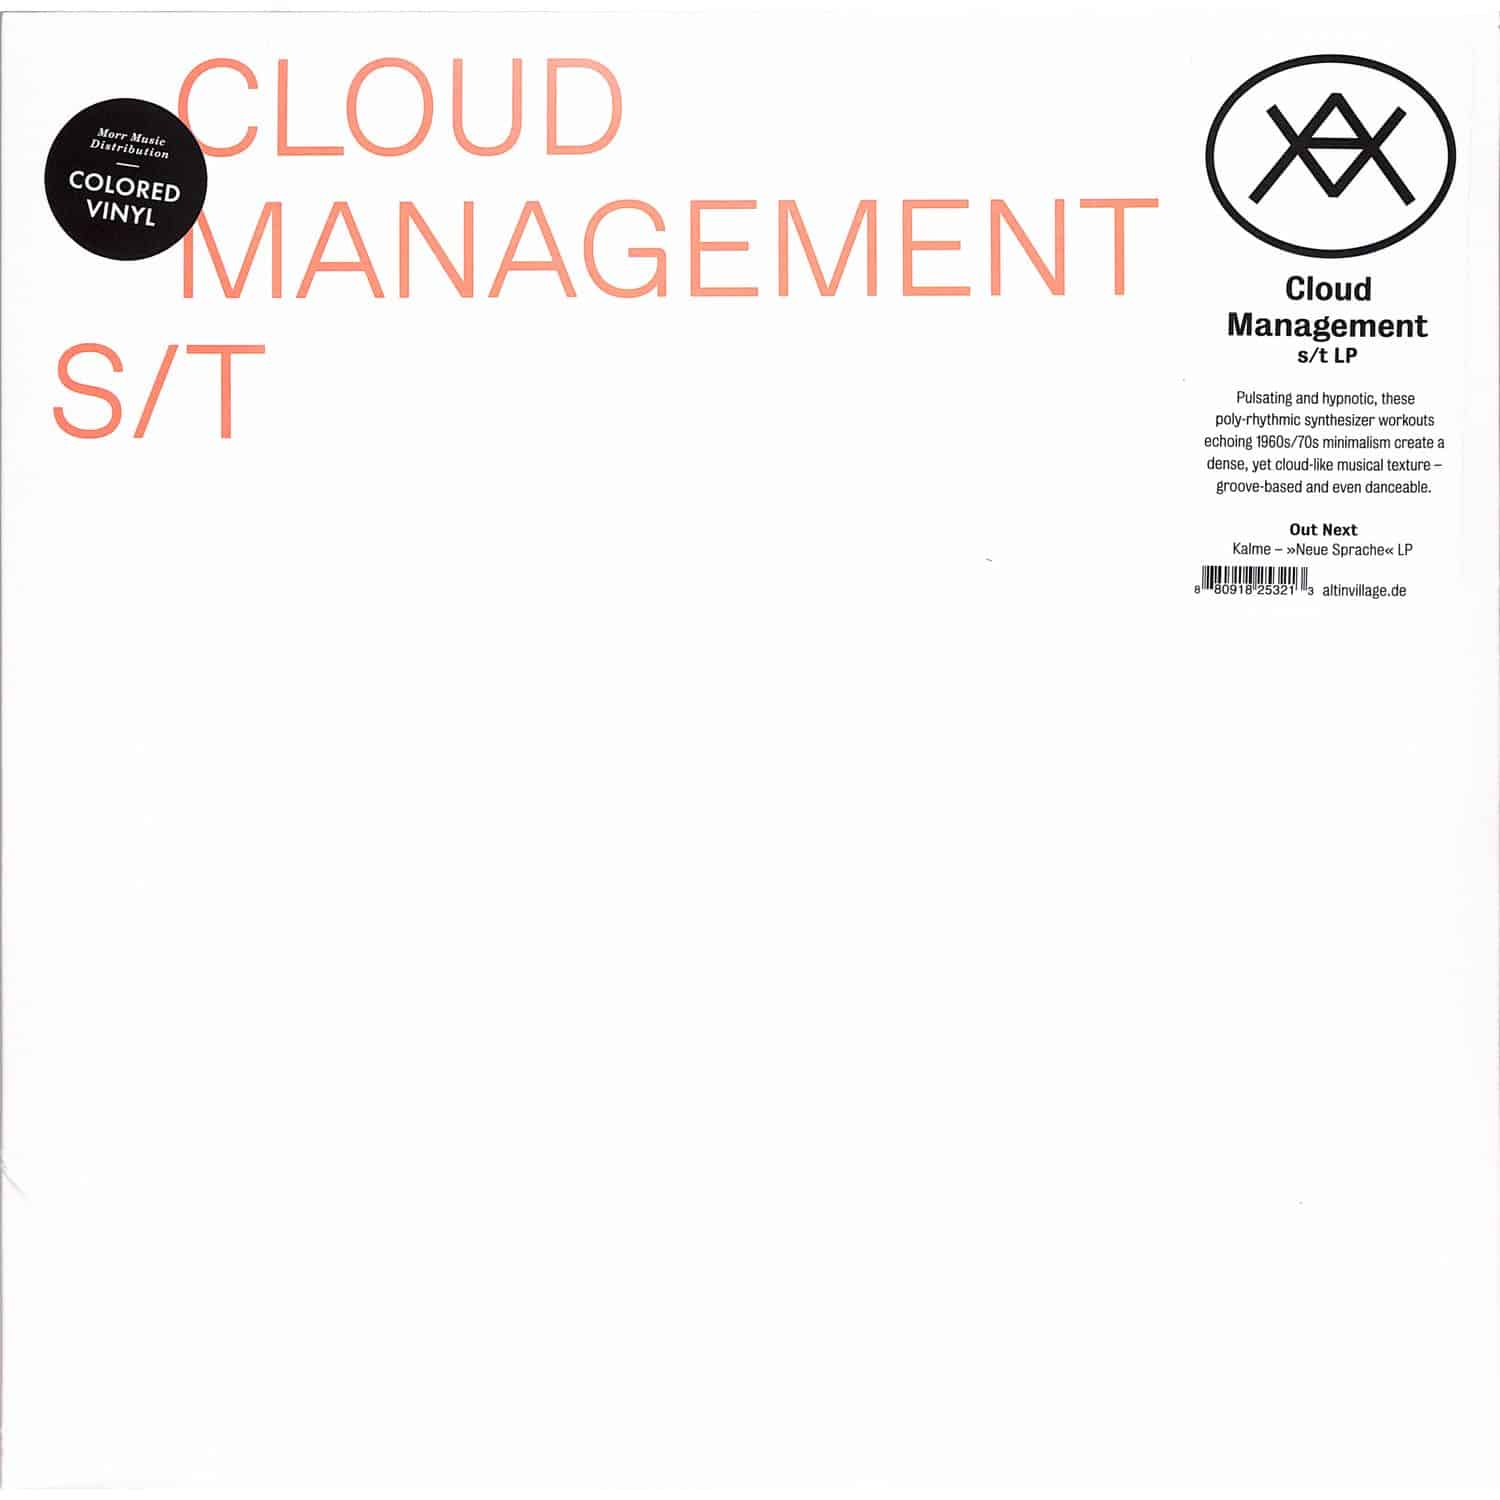 Cloud Management - CLOUD MANAGEMENT 